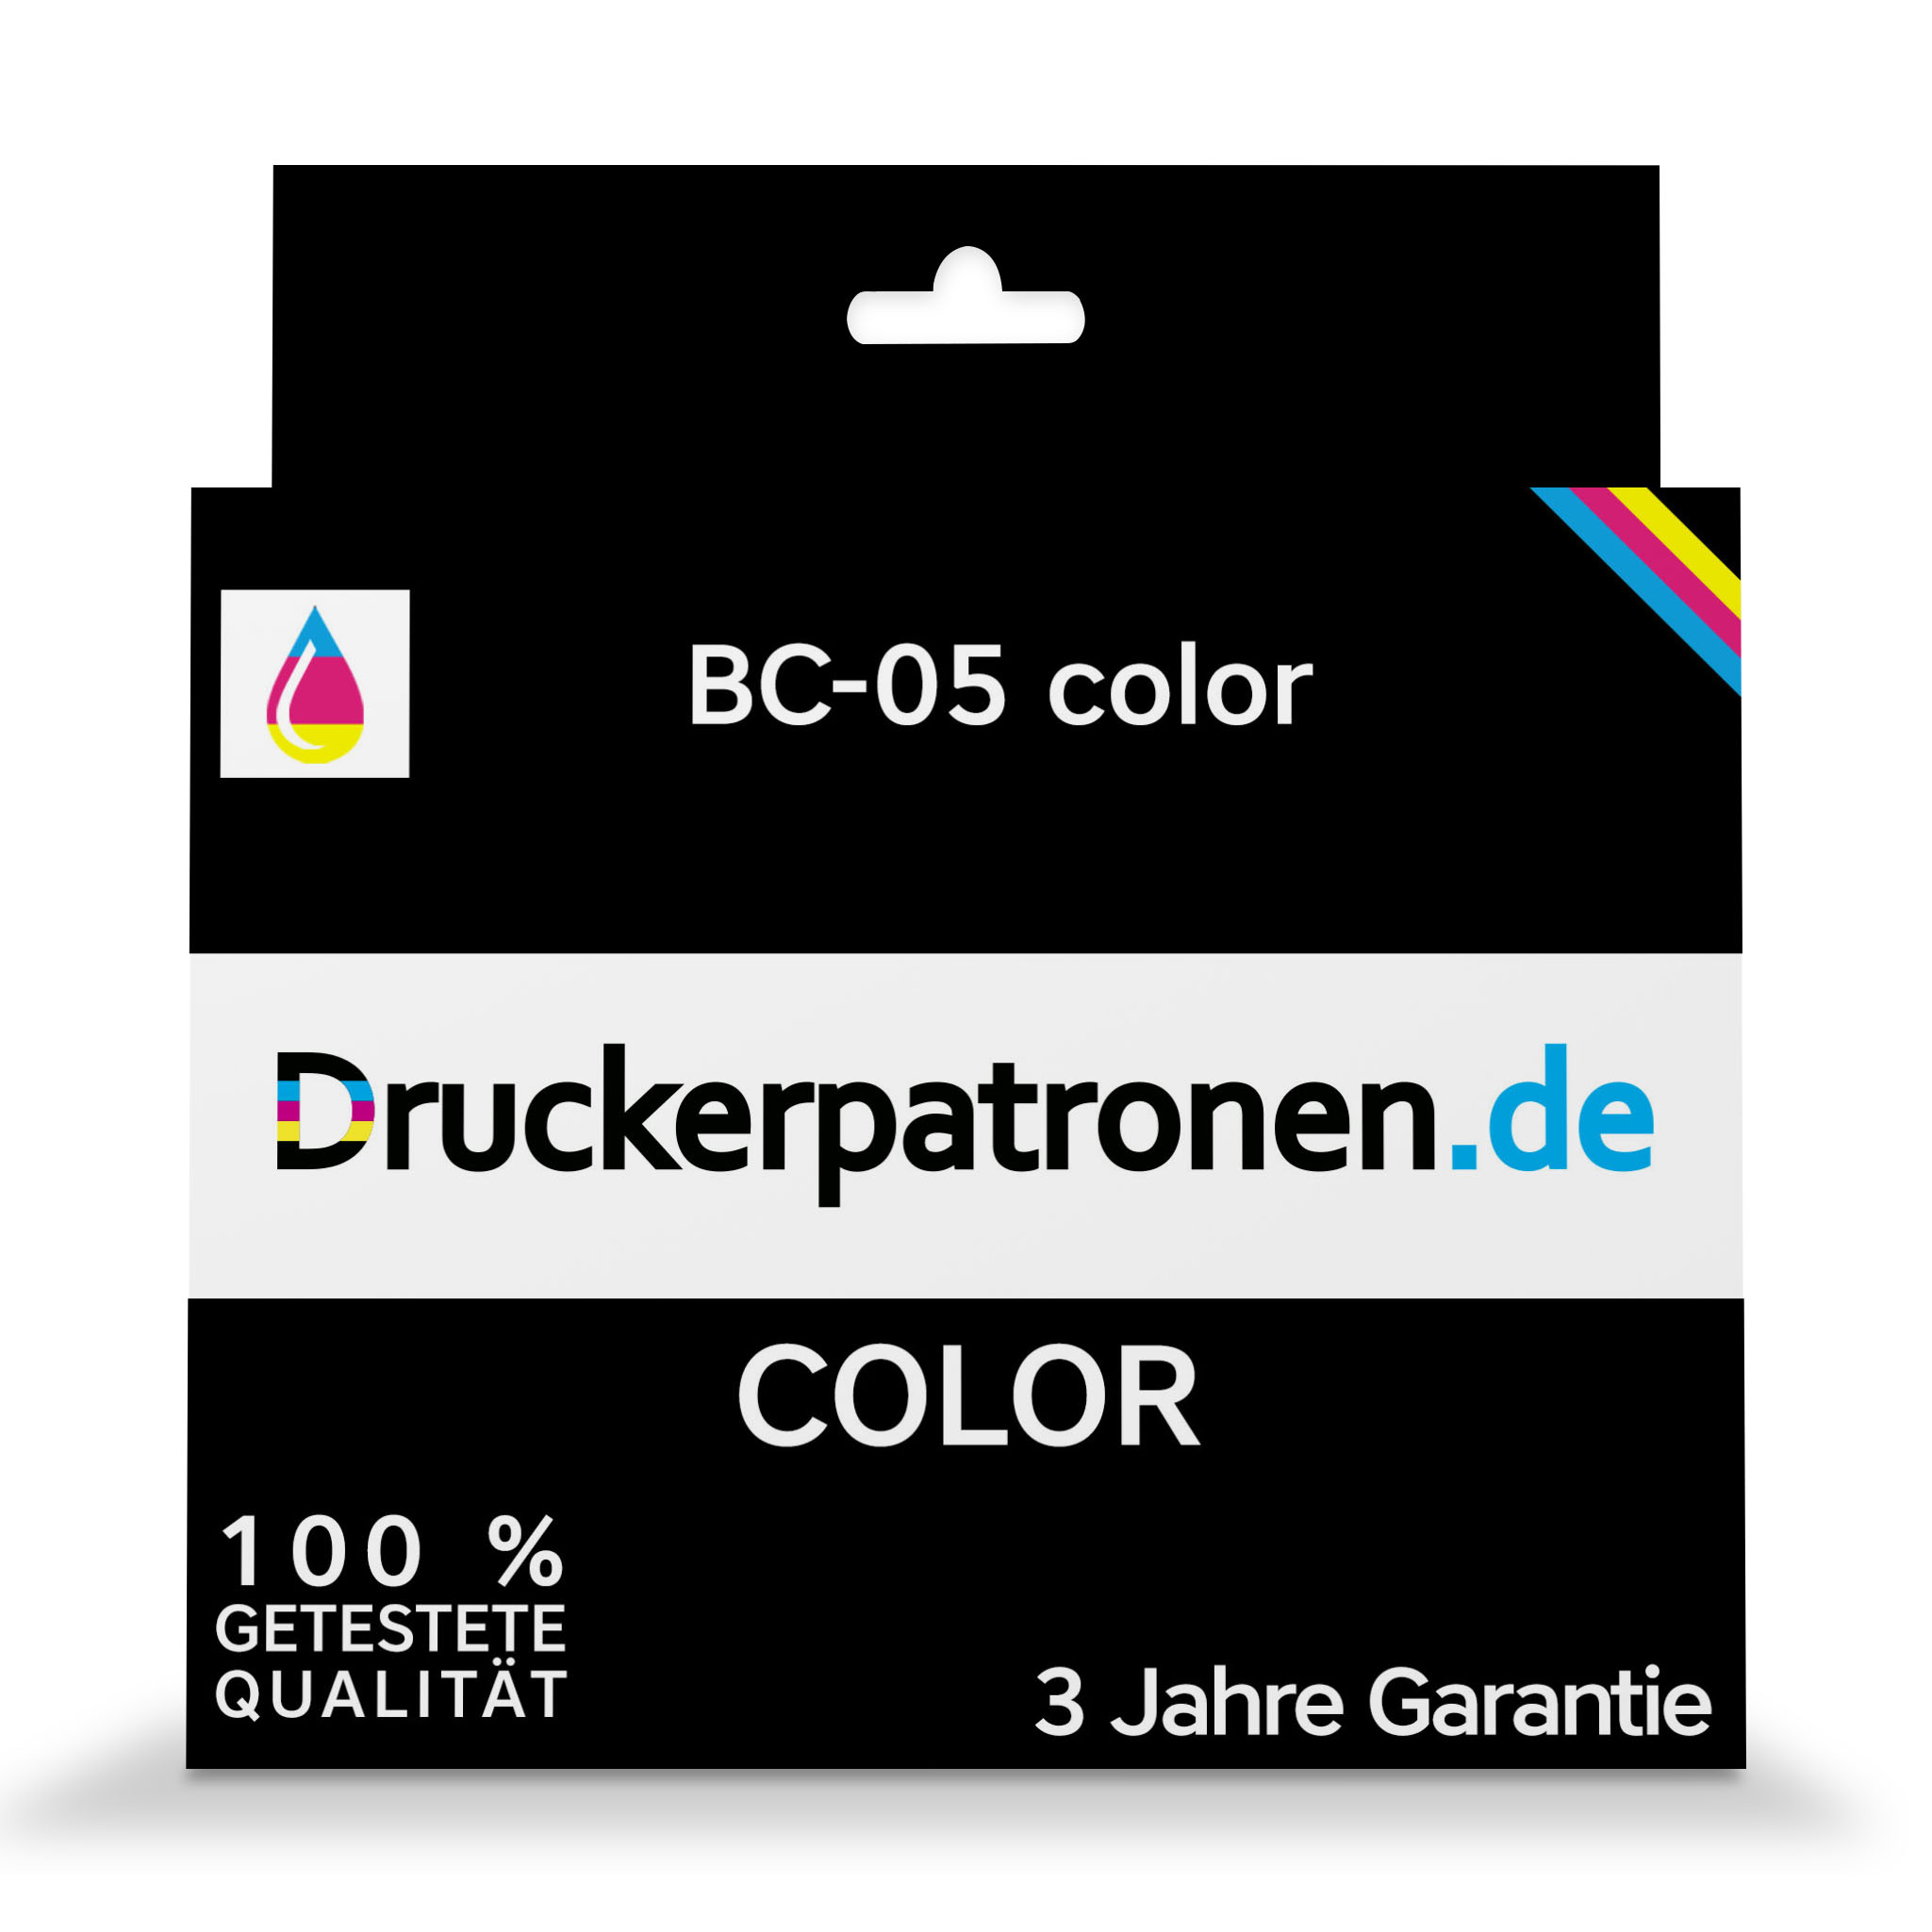 BC-05 color